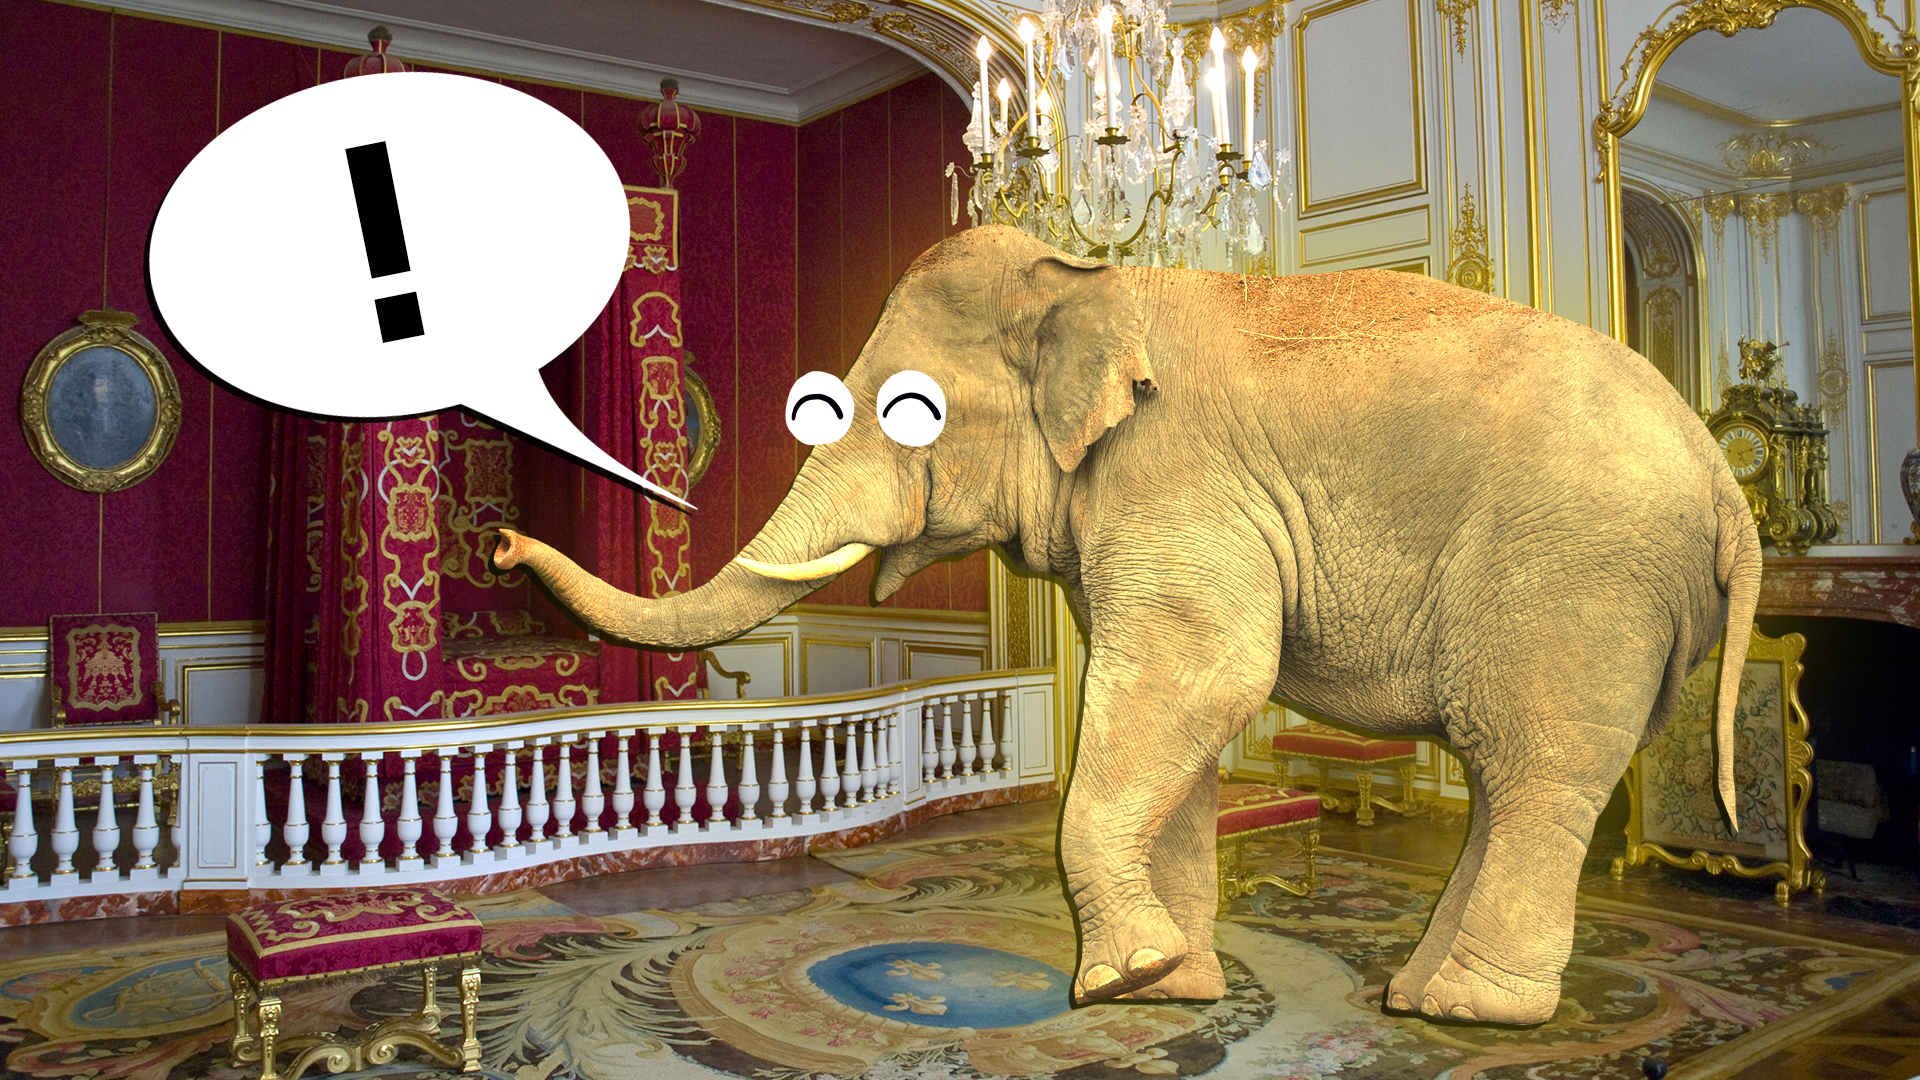 Elephant inside a royal suite